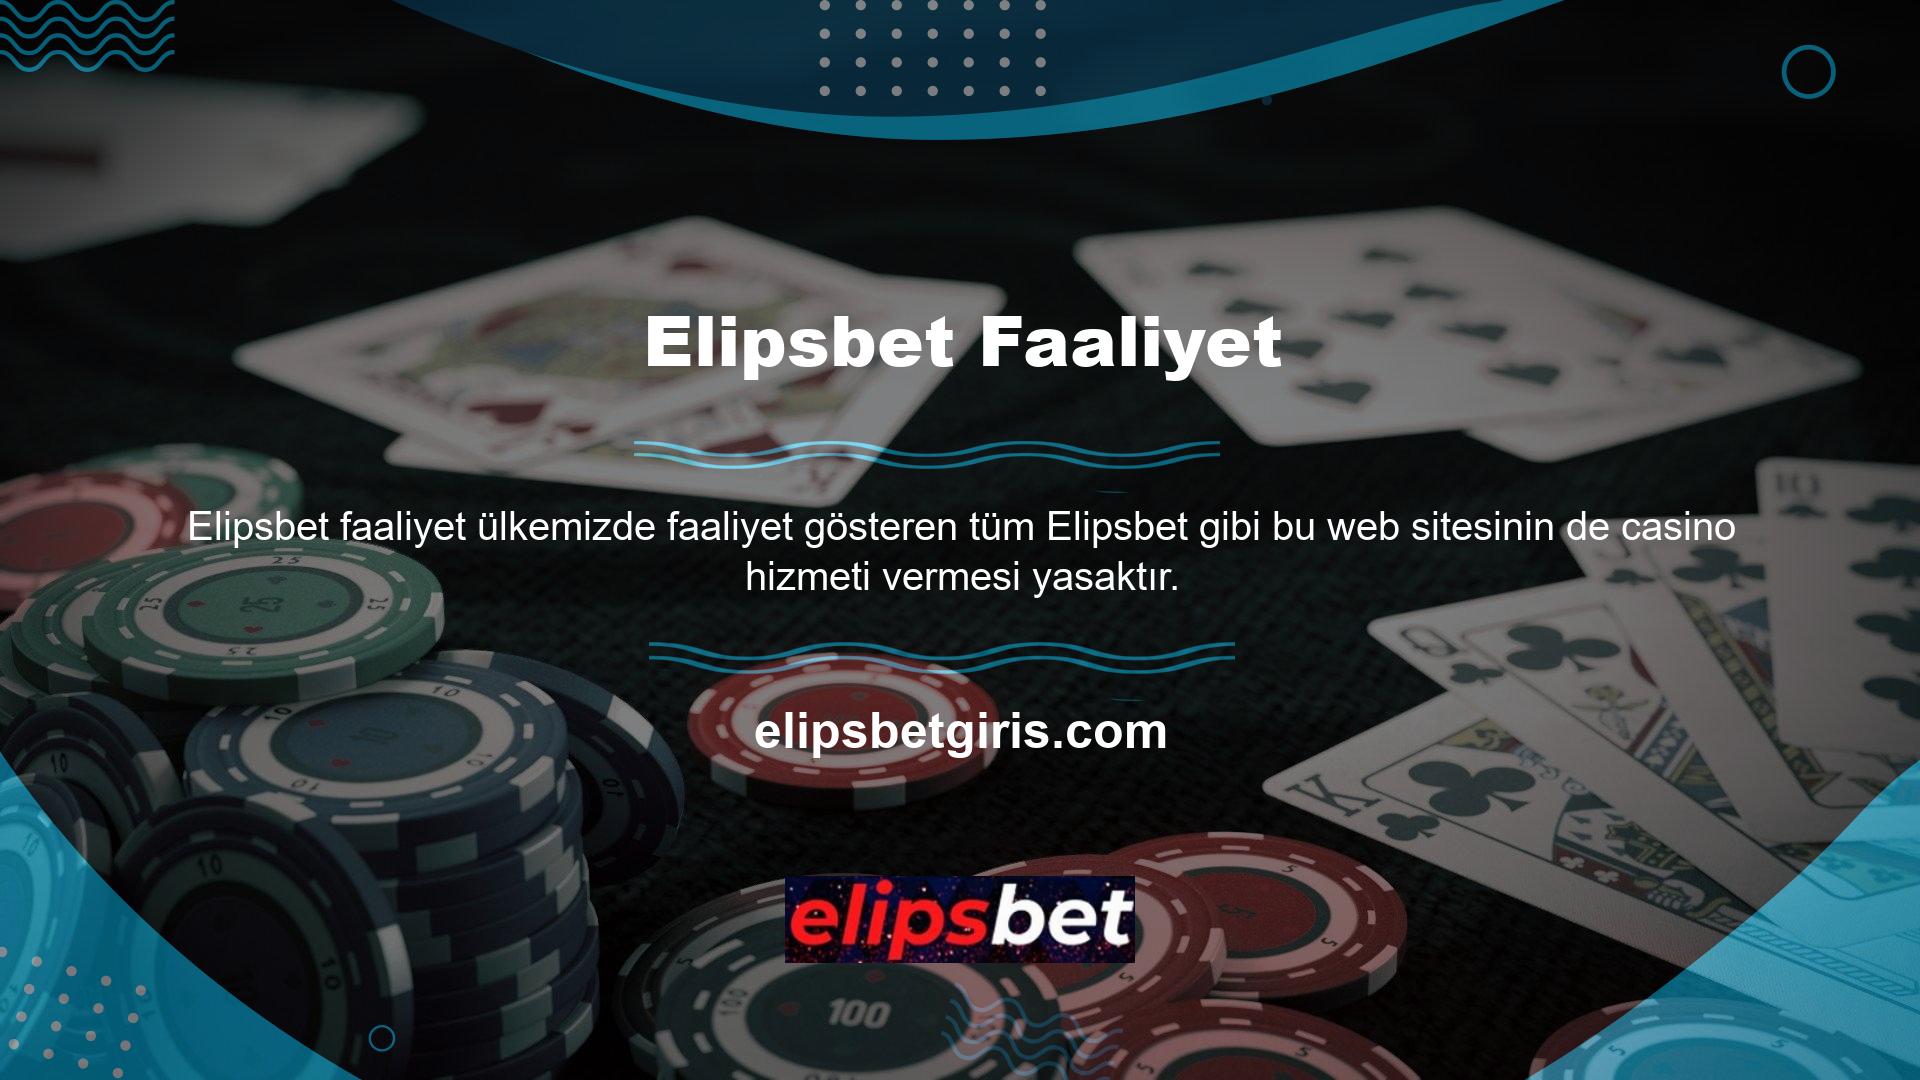 Elipsbet, Türkiye'de yasaklı yerlerden biri olarak kabul ediliyor ve BTK erişim tedbirlerine tabi olduğundan düzenli olarak kapatılıyor